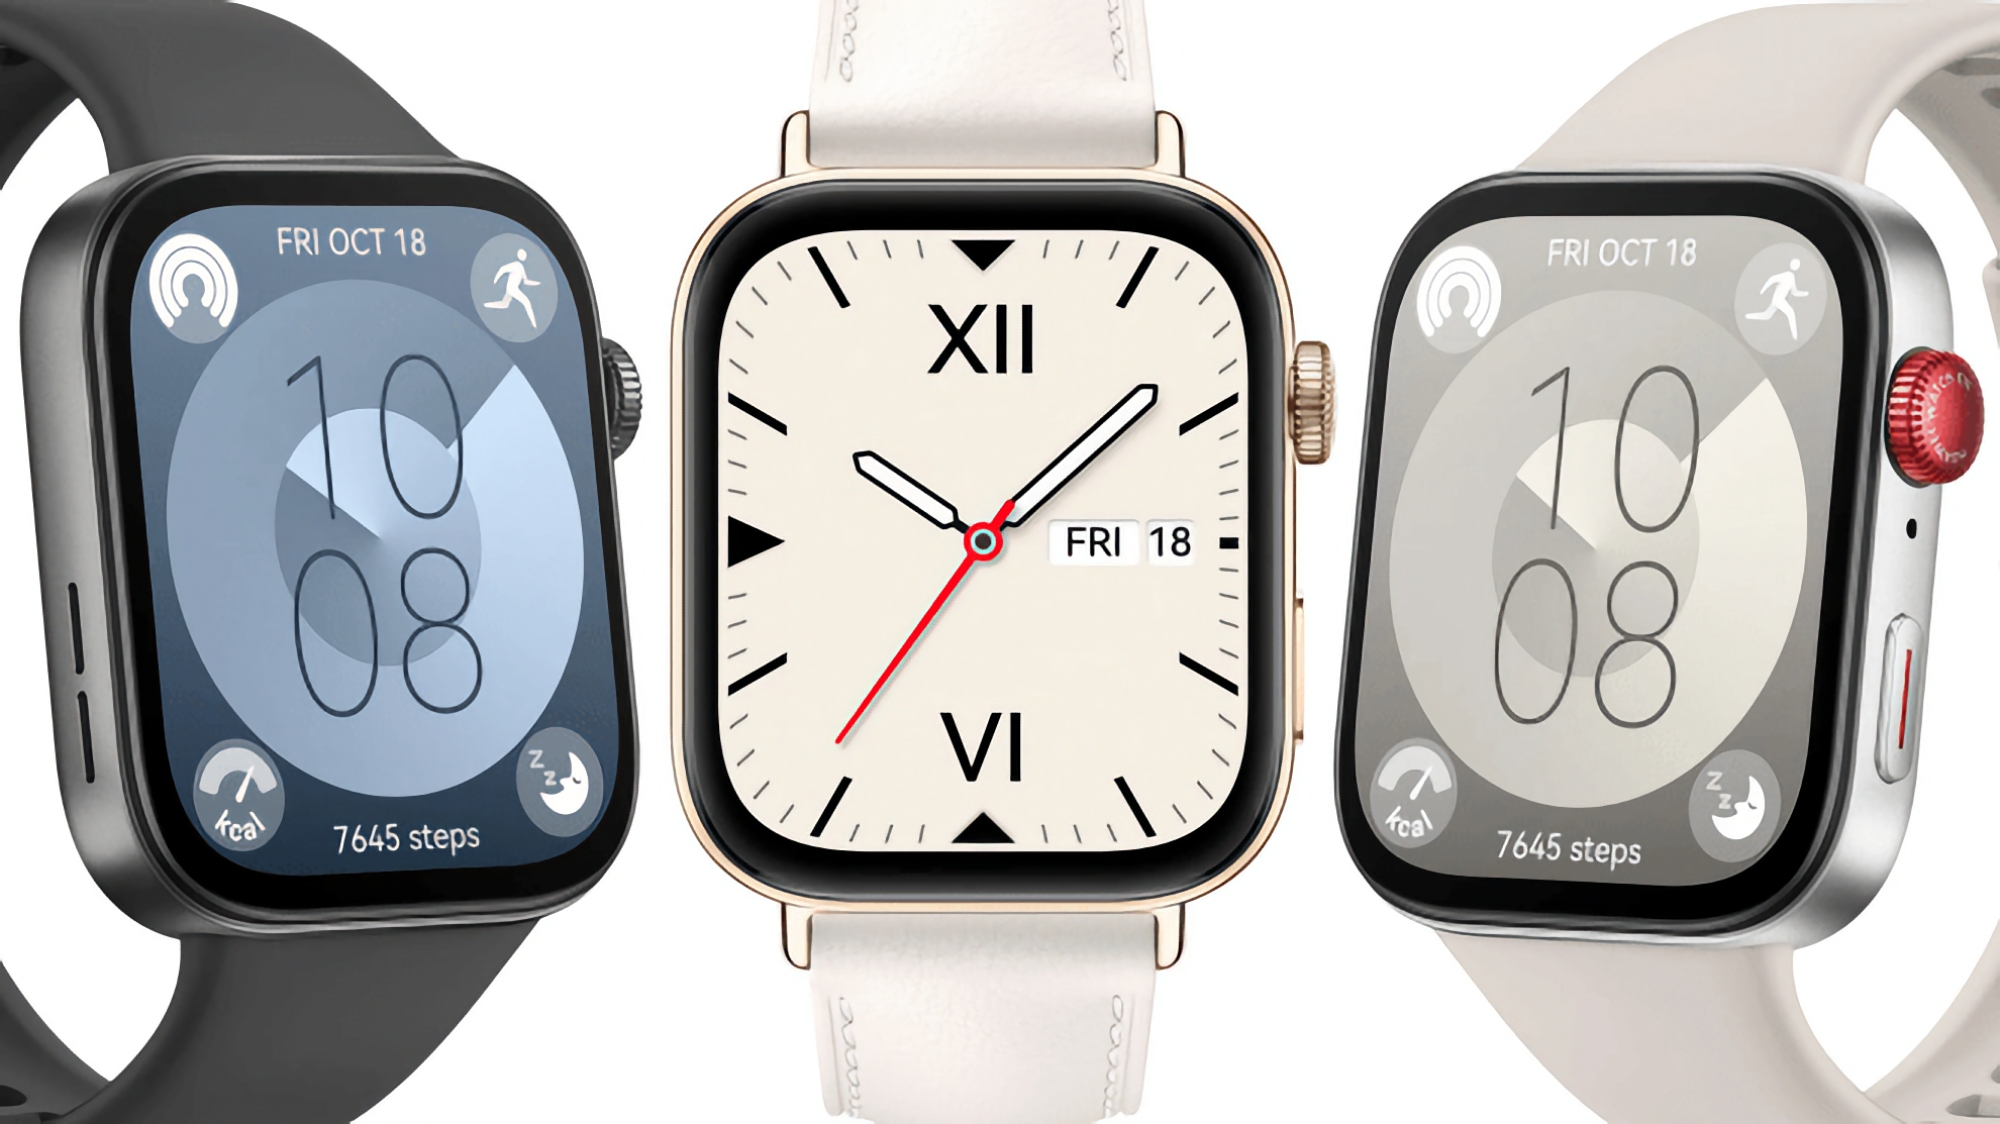 Tre colori, design in stile Apple Watch, fino a 10 giorni di autonomia e prezzo a partire da 159 euro: un insider ha svelato tutti i dettagli di Huawei Watch Fit 3